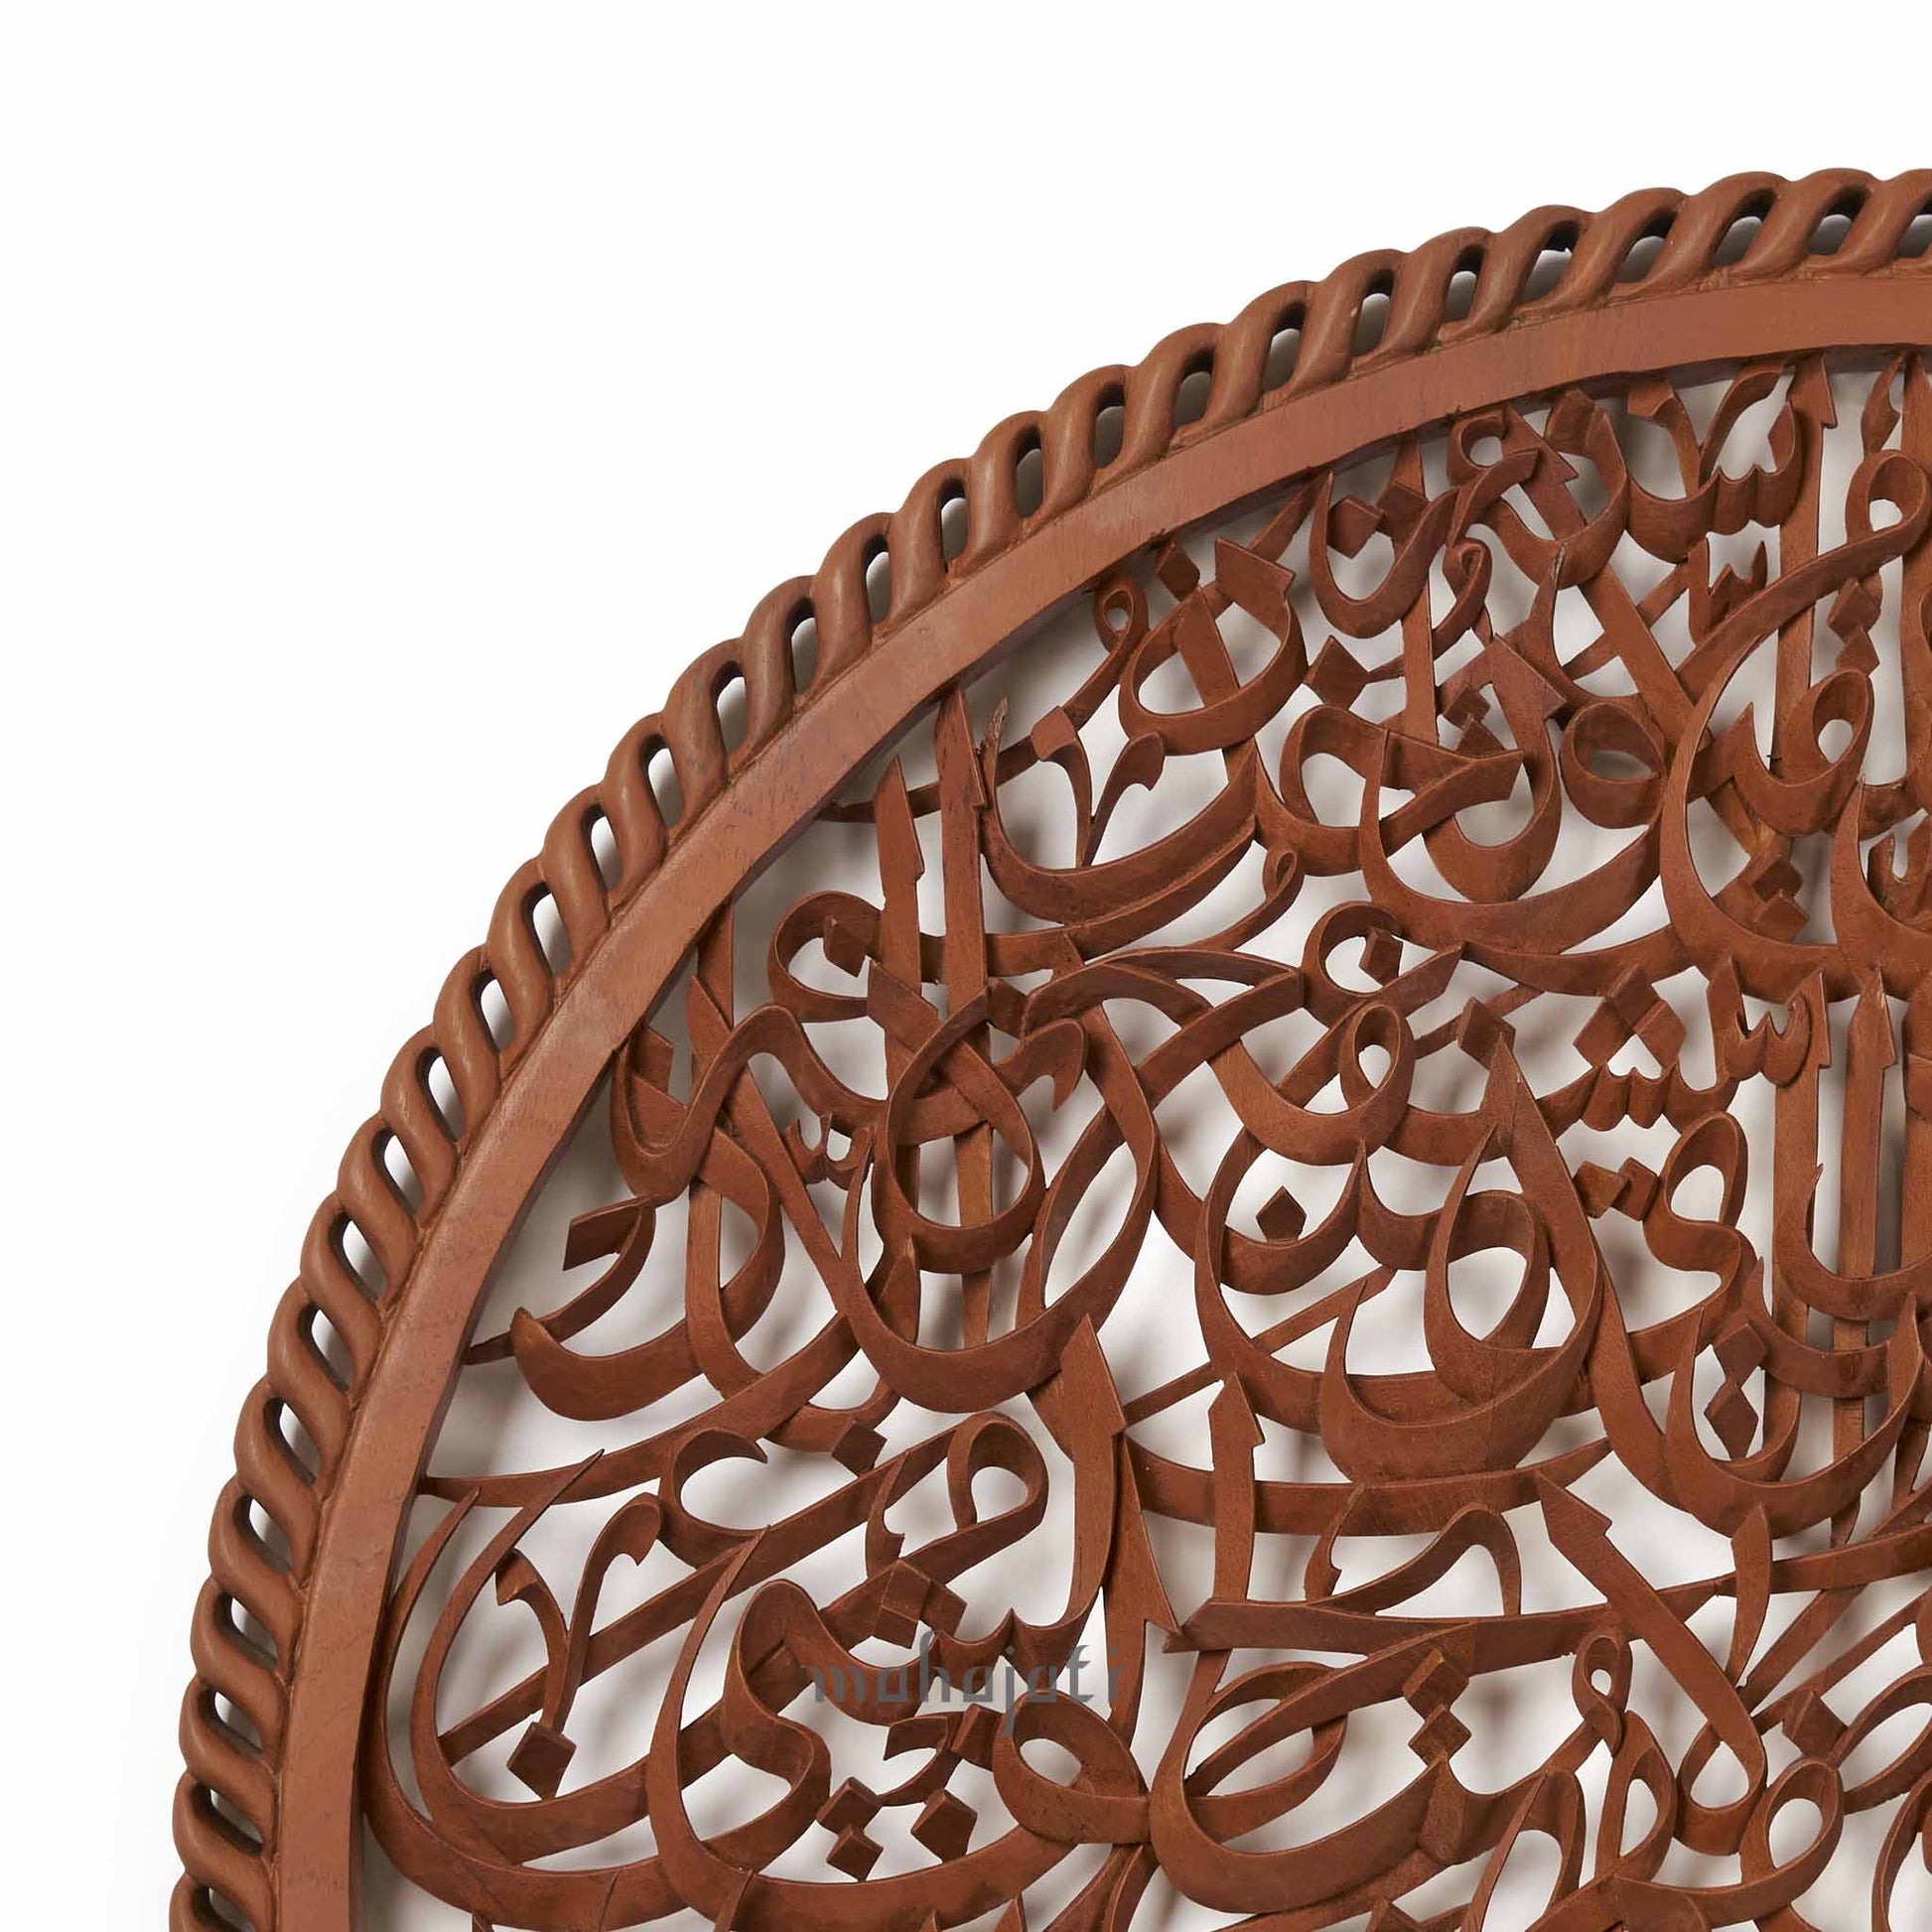 آية الكرسي الخط العربي المعقد خشبي ديكور المنزل الإسلامي